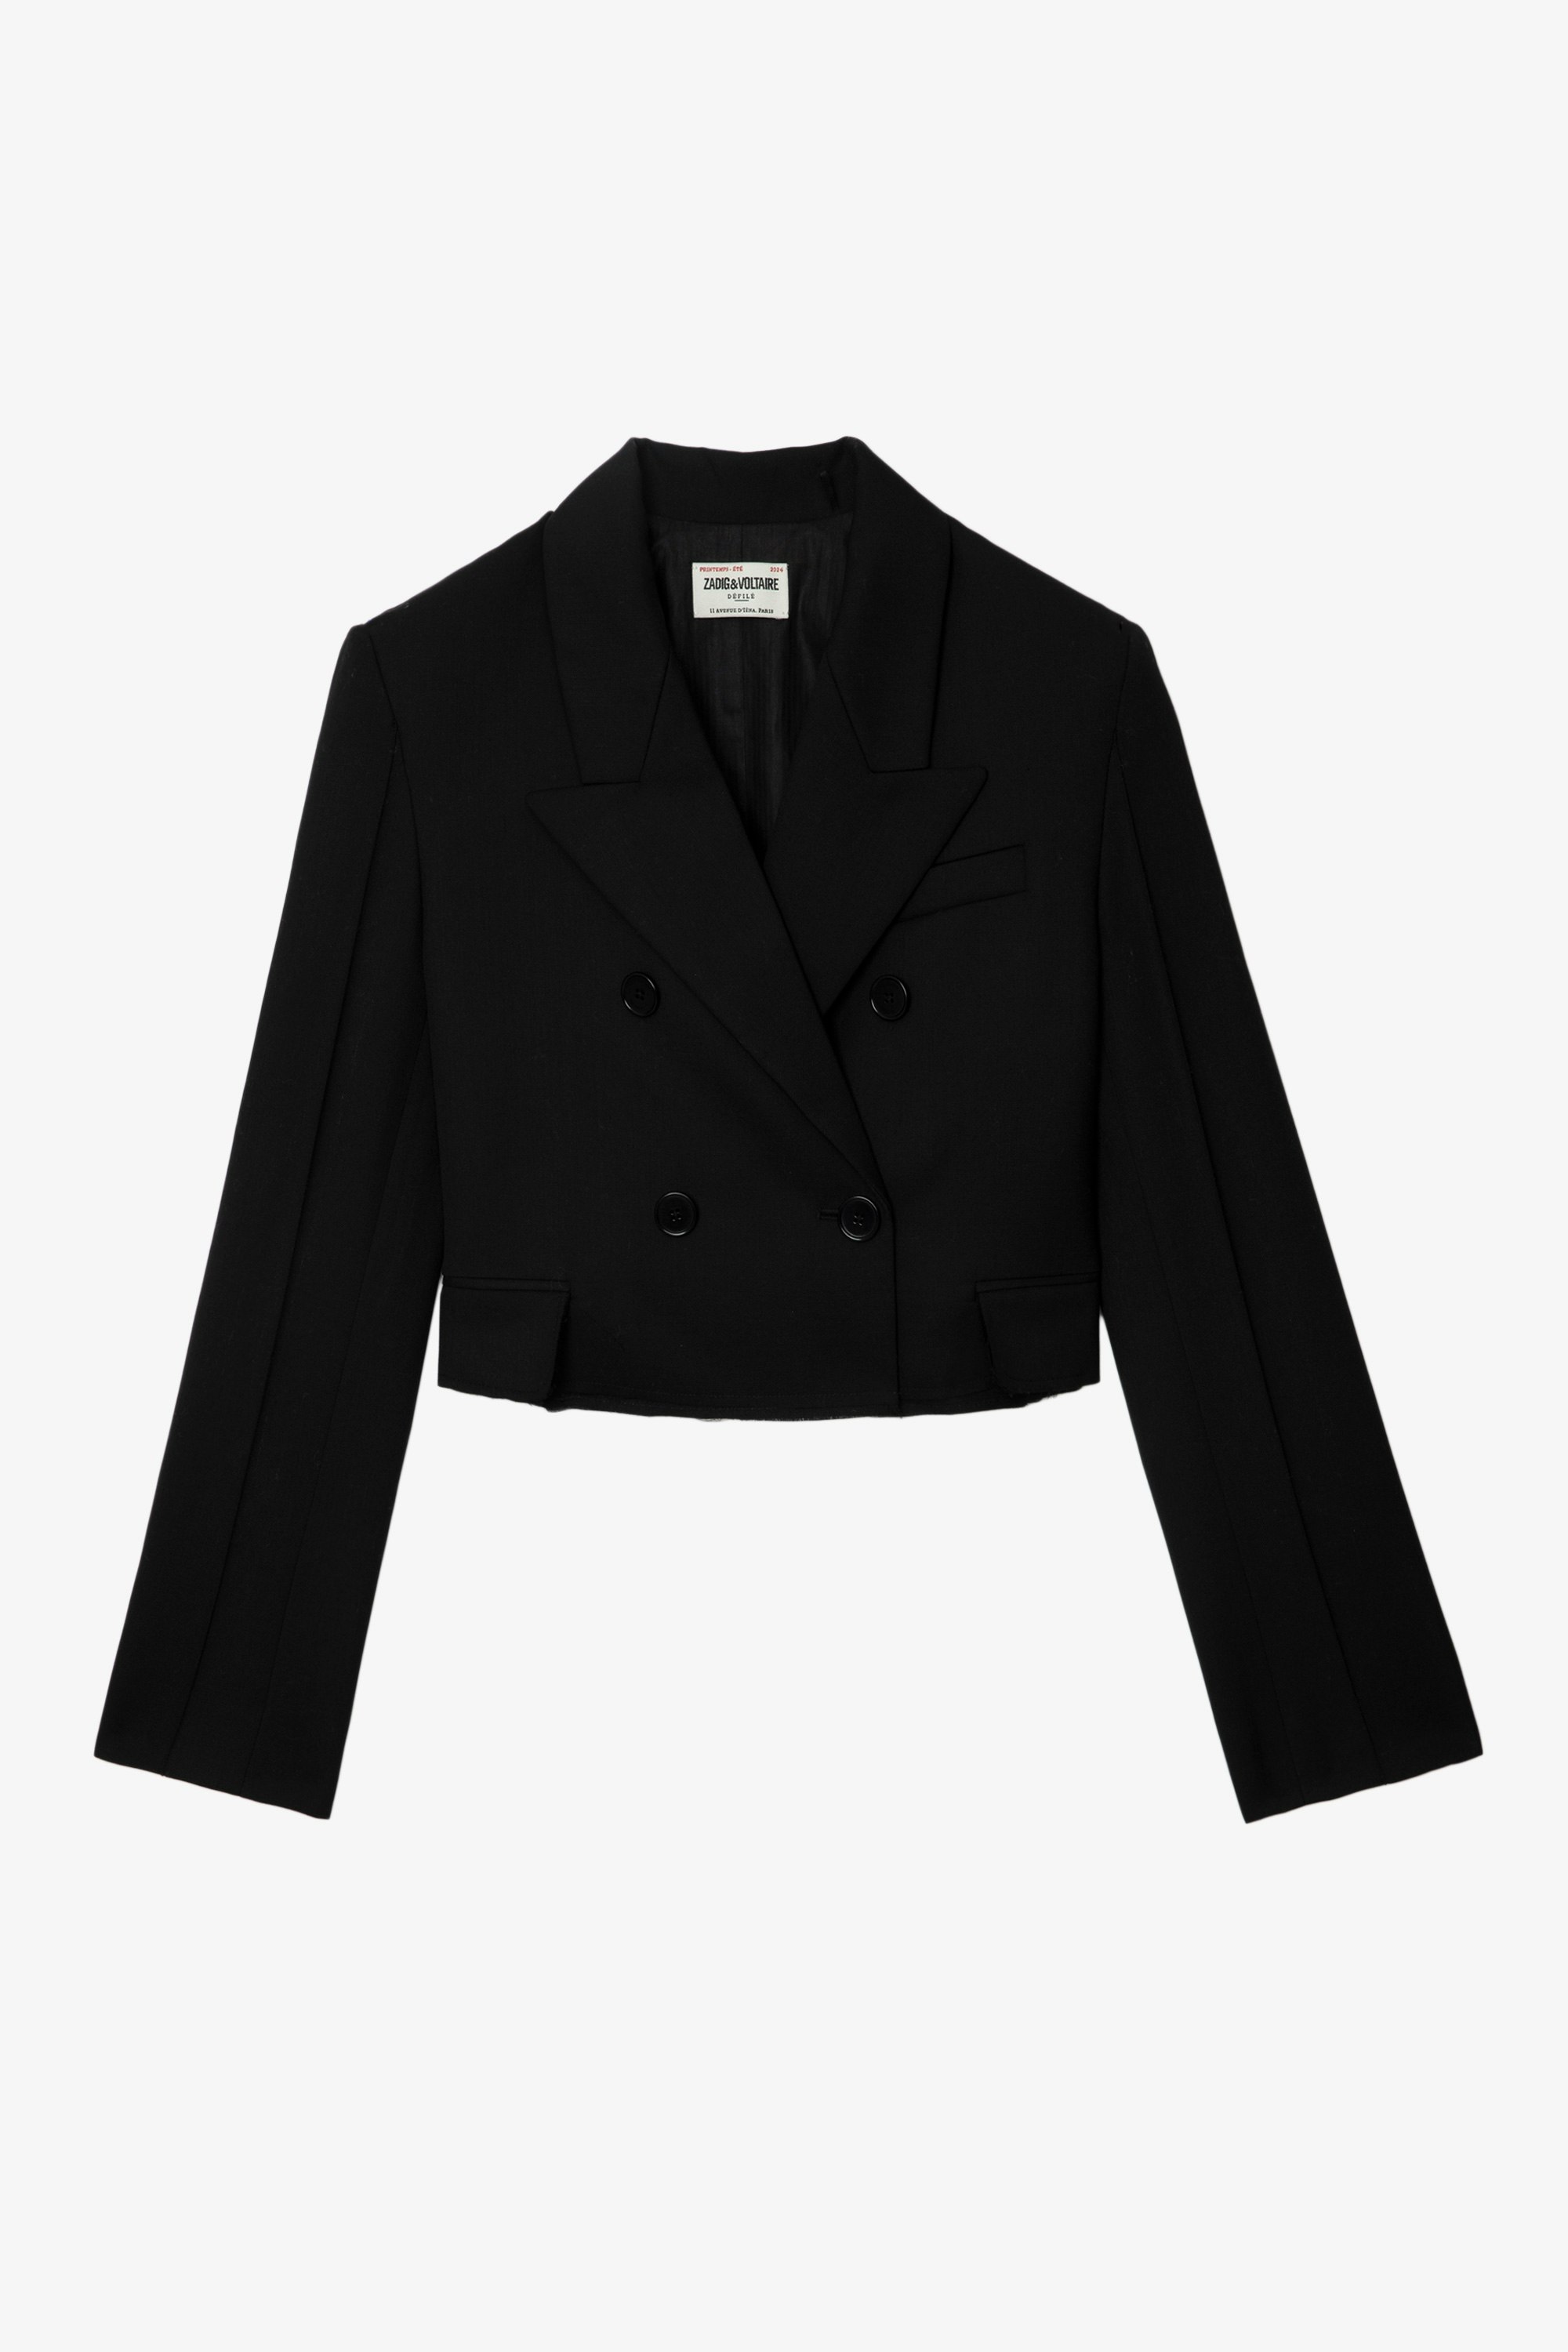 Blazer Vito - Veste blazer courte et oversize en laine froide noire, boutonnée et à bords bruts.